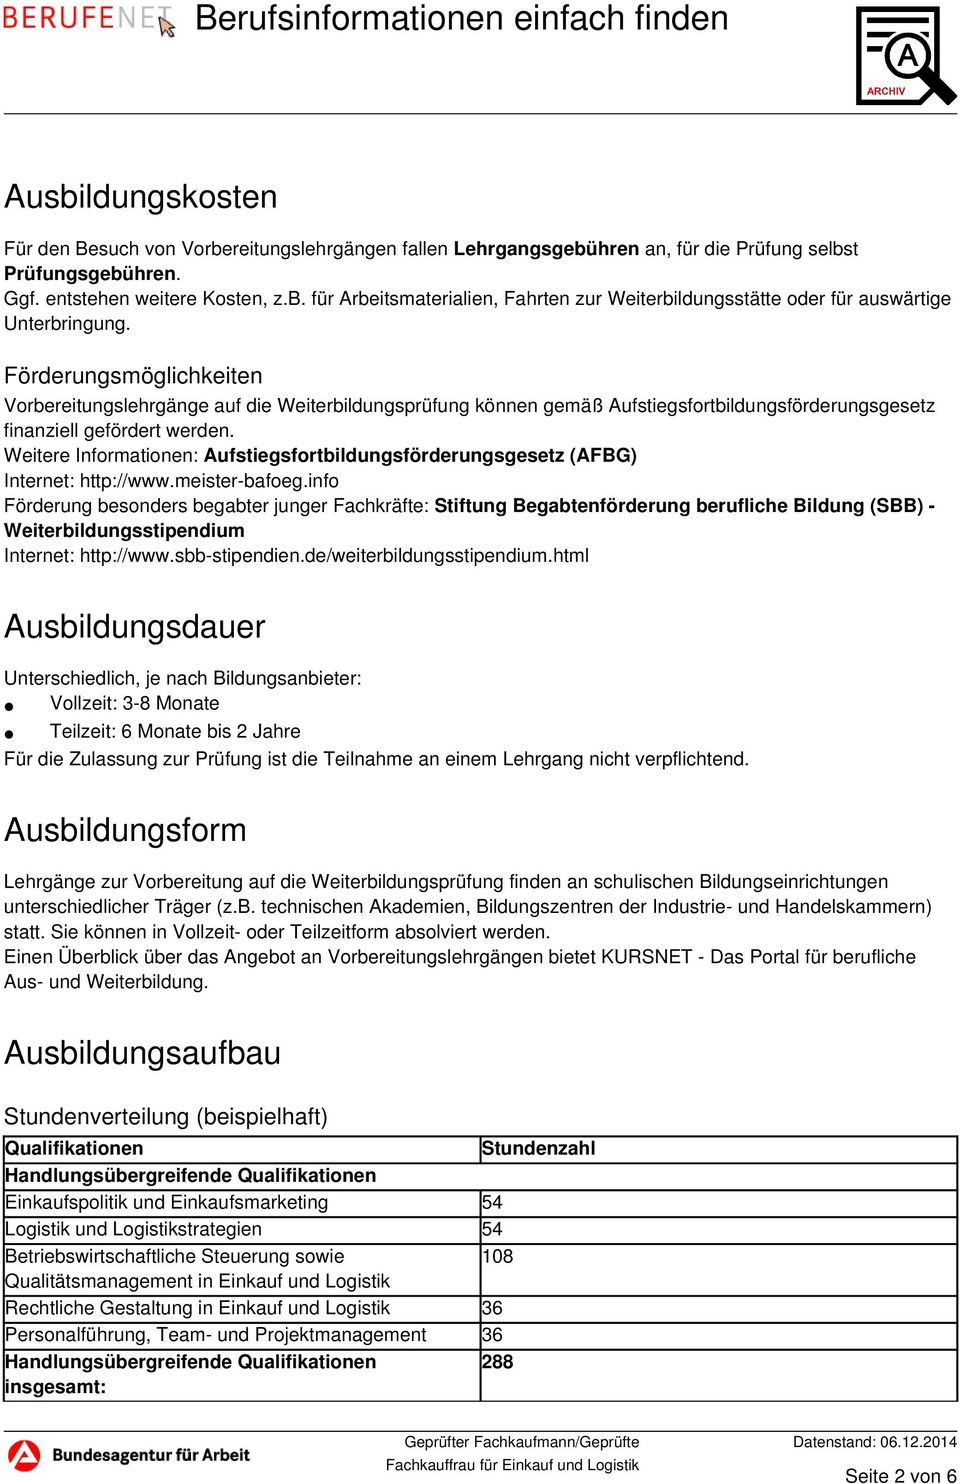 Weitere Informationen: Aufstiegsfortbildungsförderungsgesetz (AFBG) Internet: http://www.meister-bafoeg.